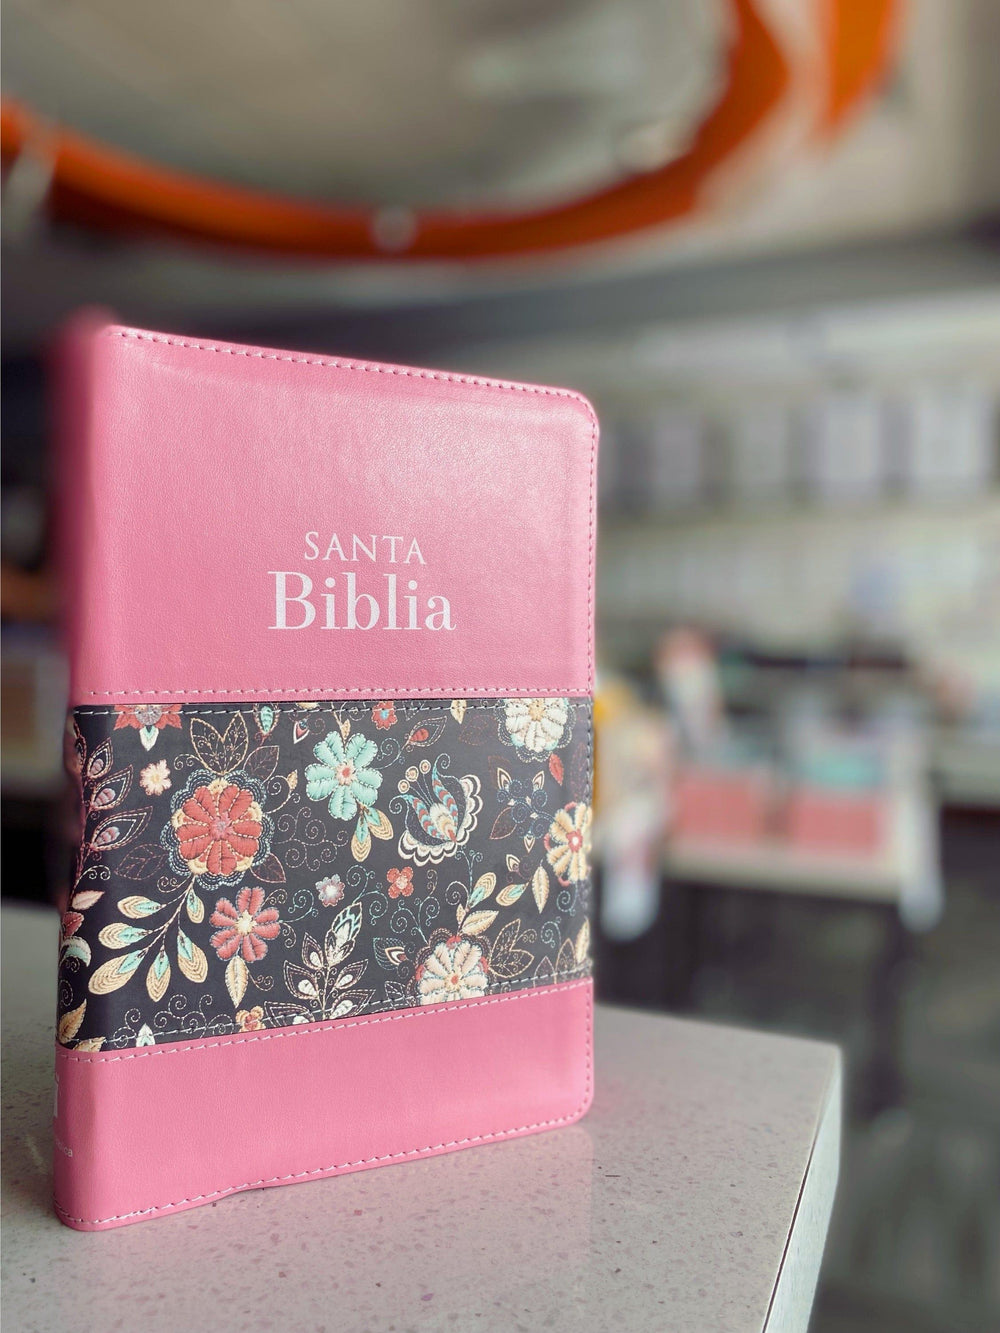 Biblia Tamaño Manual Letra Grande con cierre - Rosa/Floral - Pura Vida Books